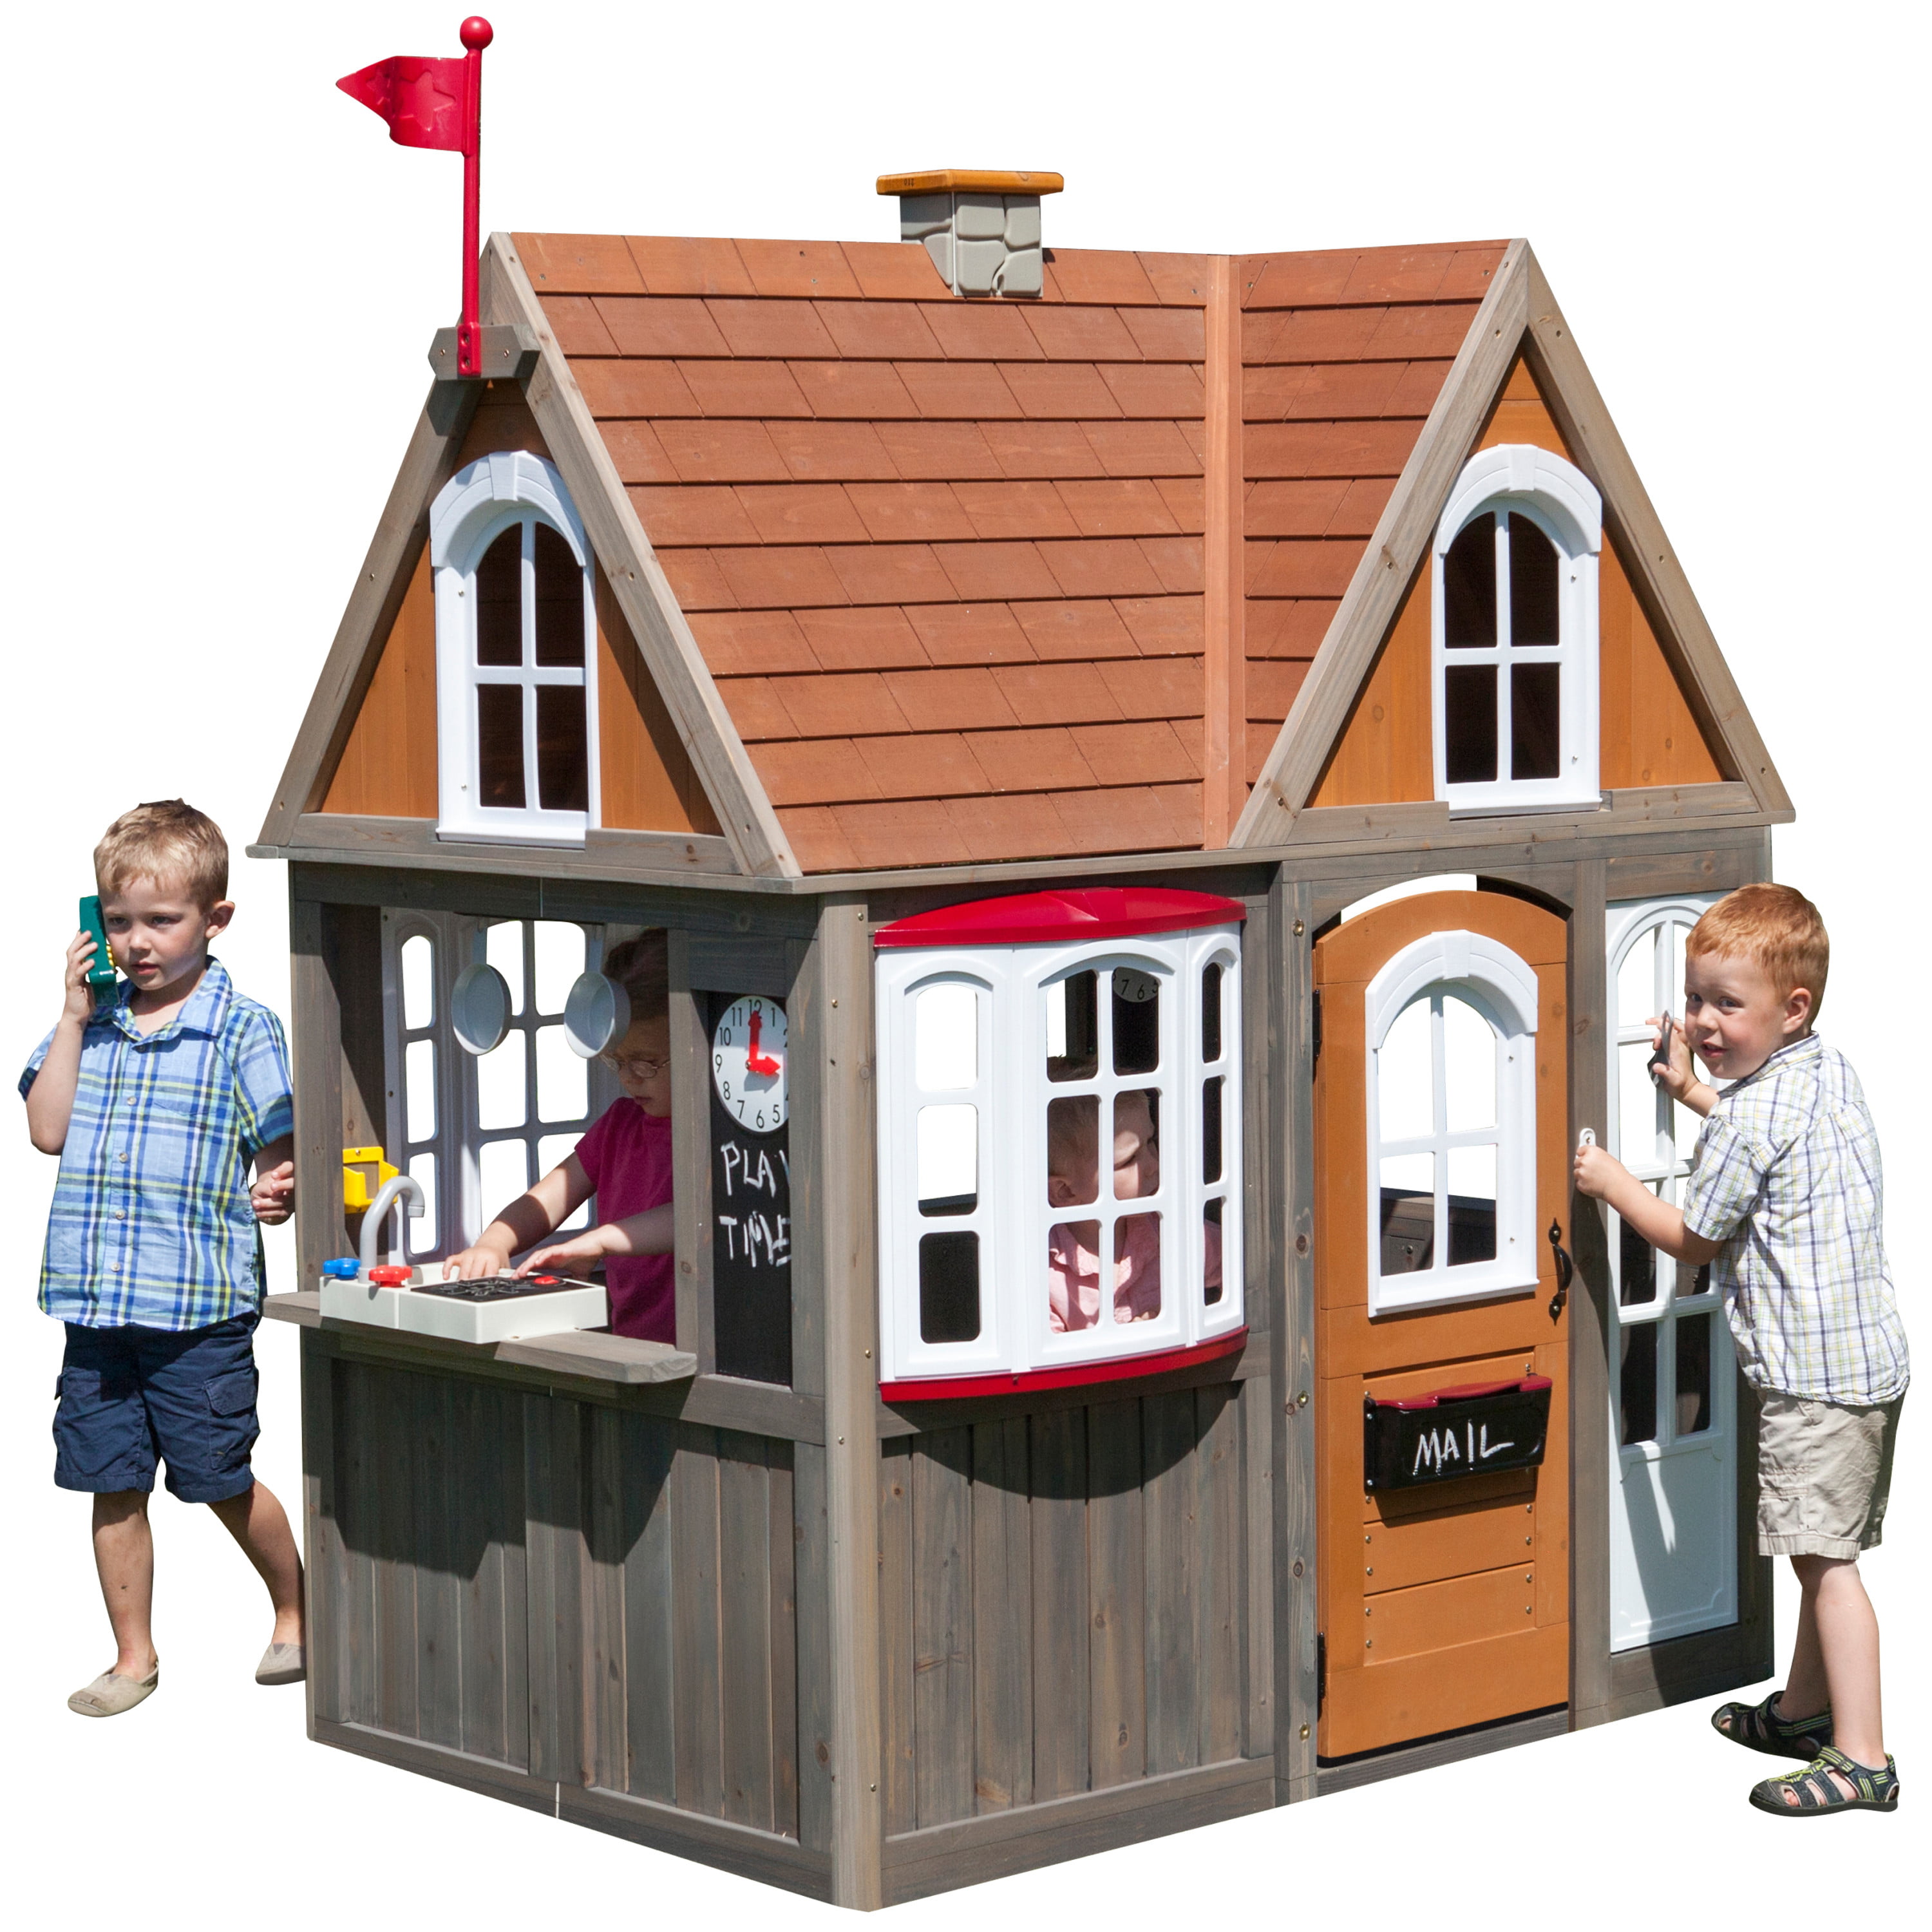 Little Tikes Deluxe Home And Garden Playhouse Indoor Outdoor Toy Toddlers Walmart Com Walmart Com